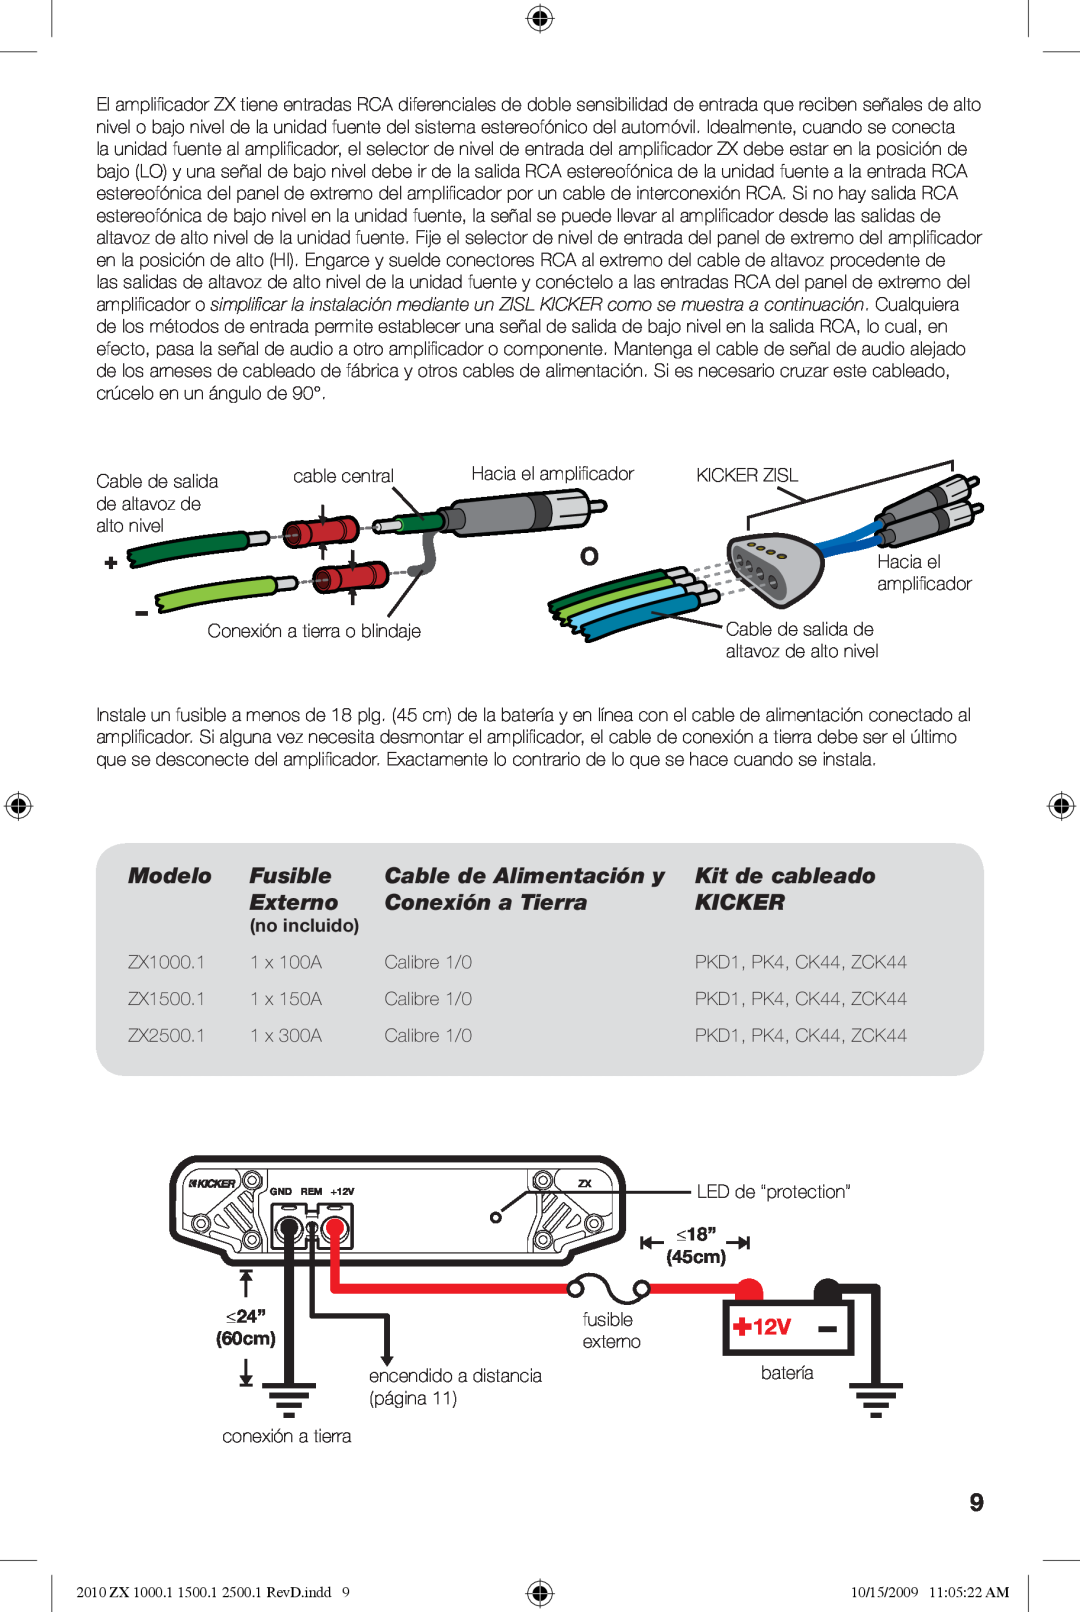 Kicker ZX2500.1 Modelo, Fusible, Cable de Alimentación y, Kit de cableado, Externo, Conexión a Tierra, Kicker, no incluido 